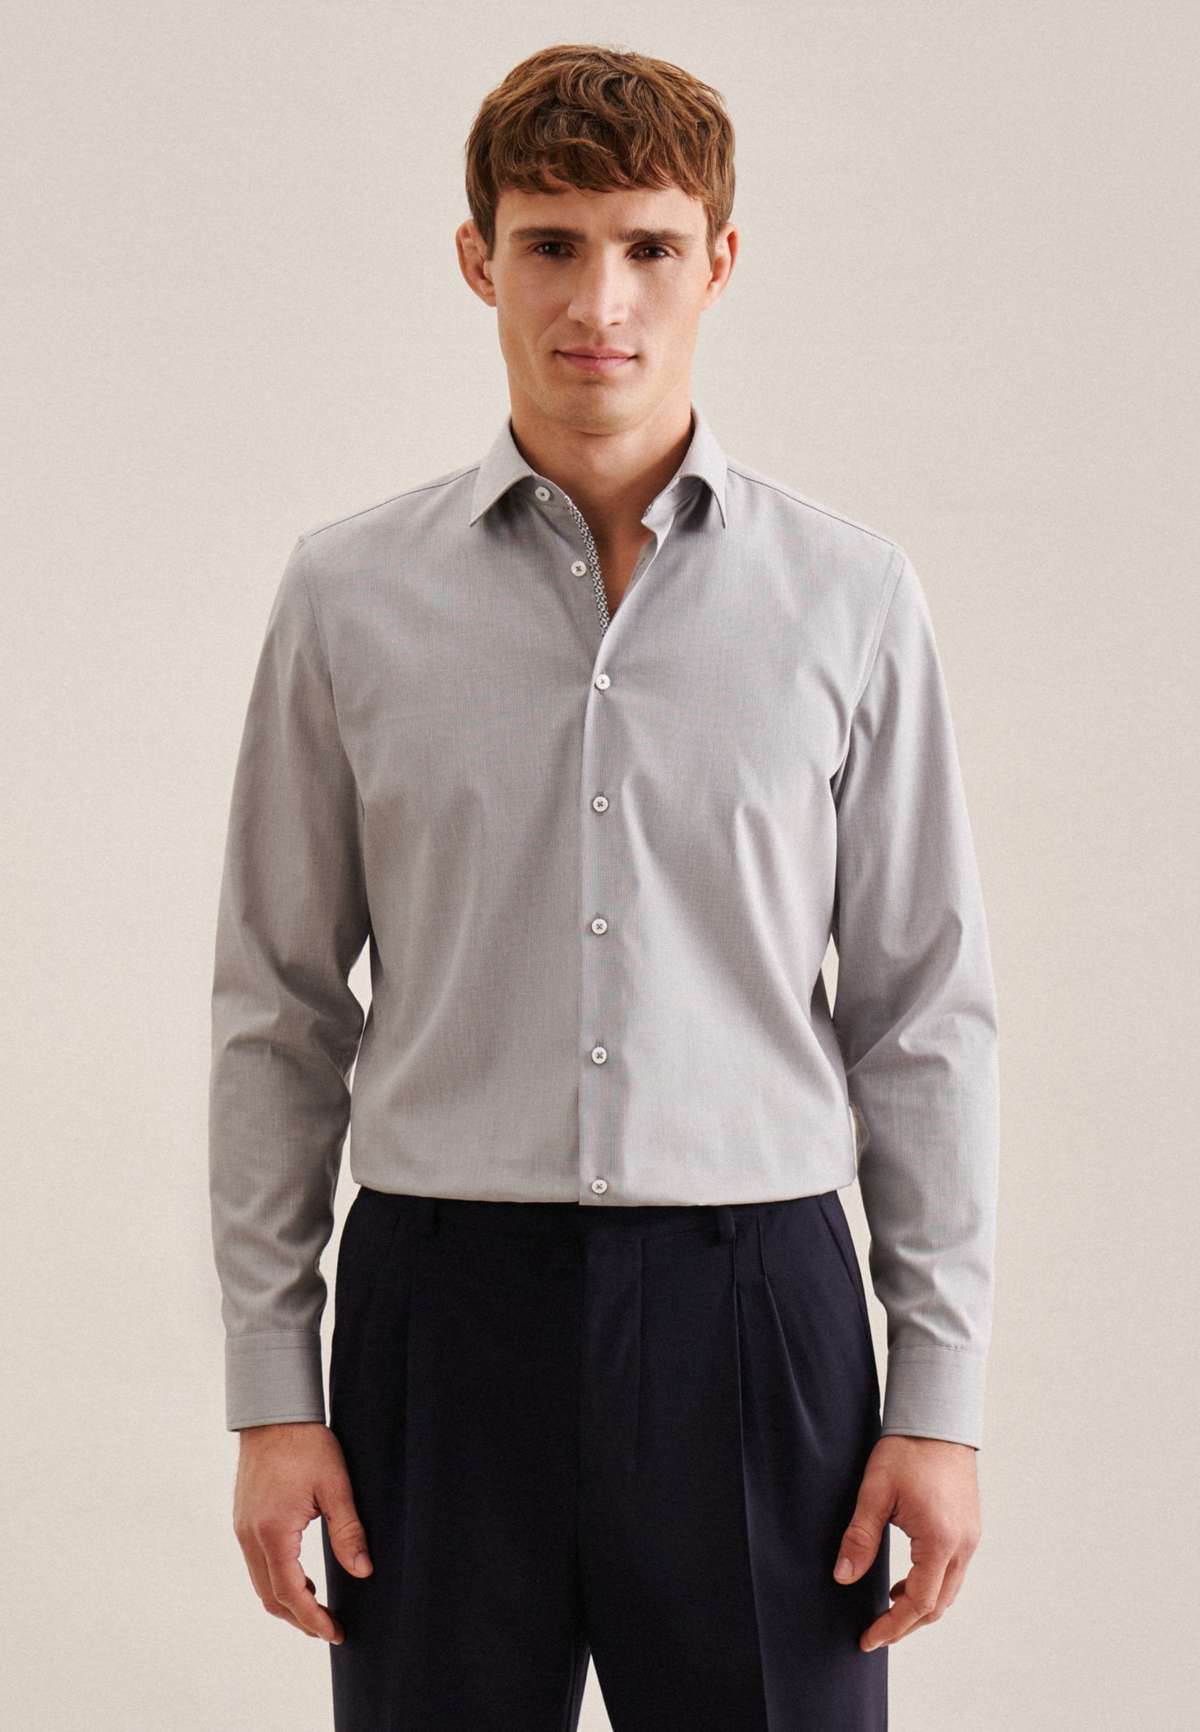 Деловая рубашка, фасонные удлиненные рукава, однотонный воротник «Кент».